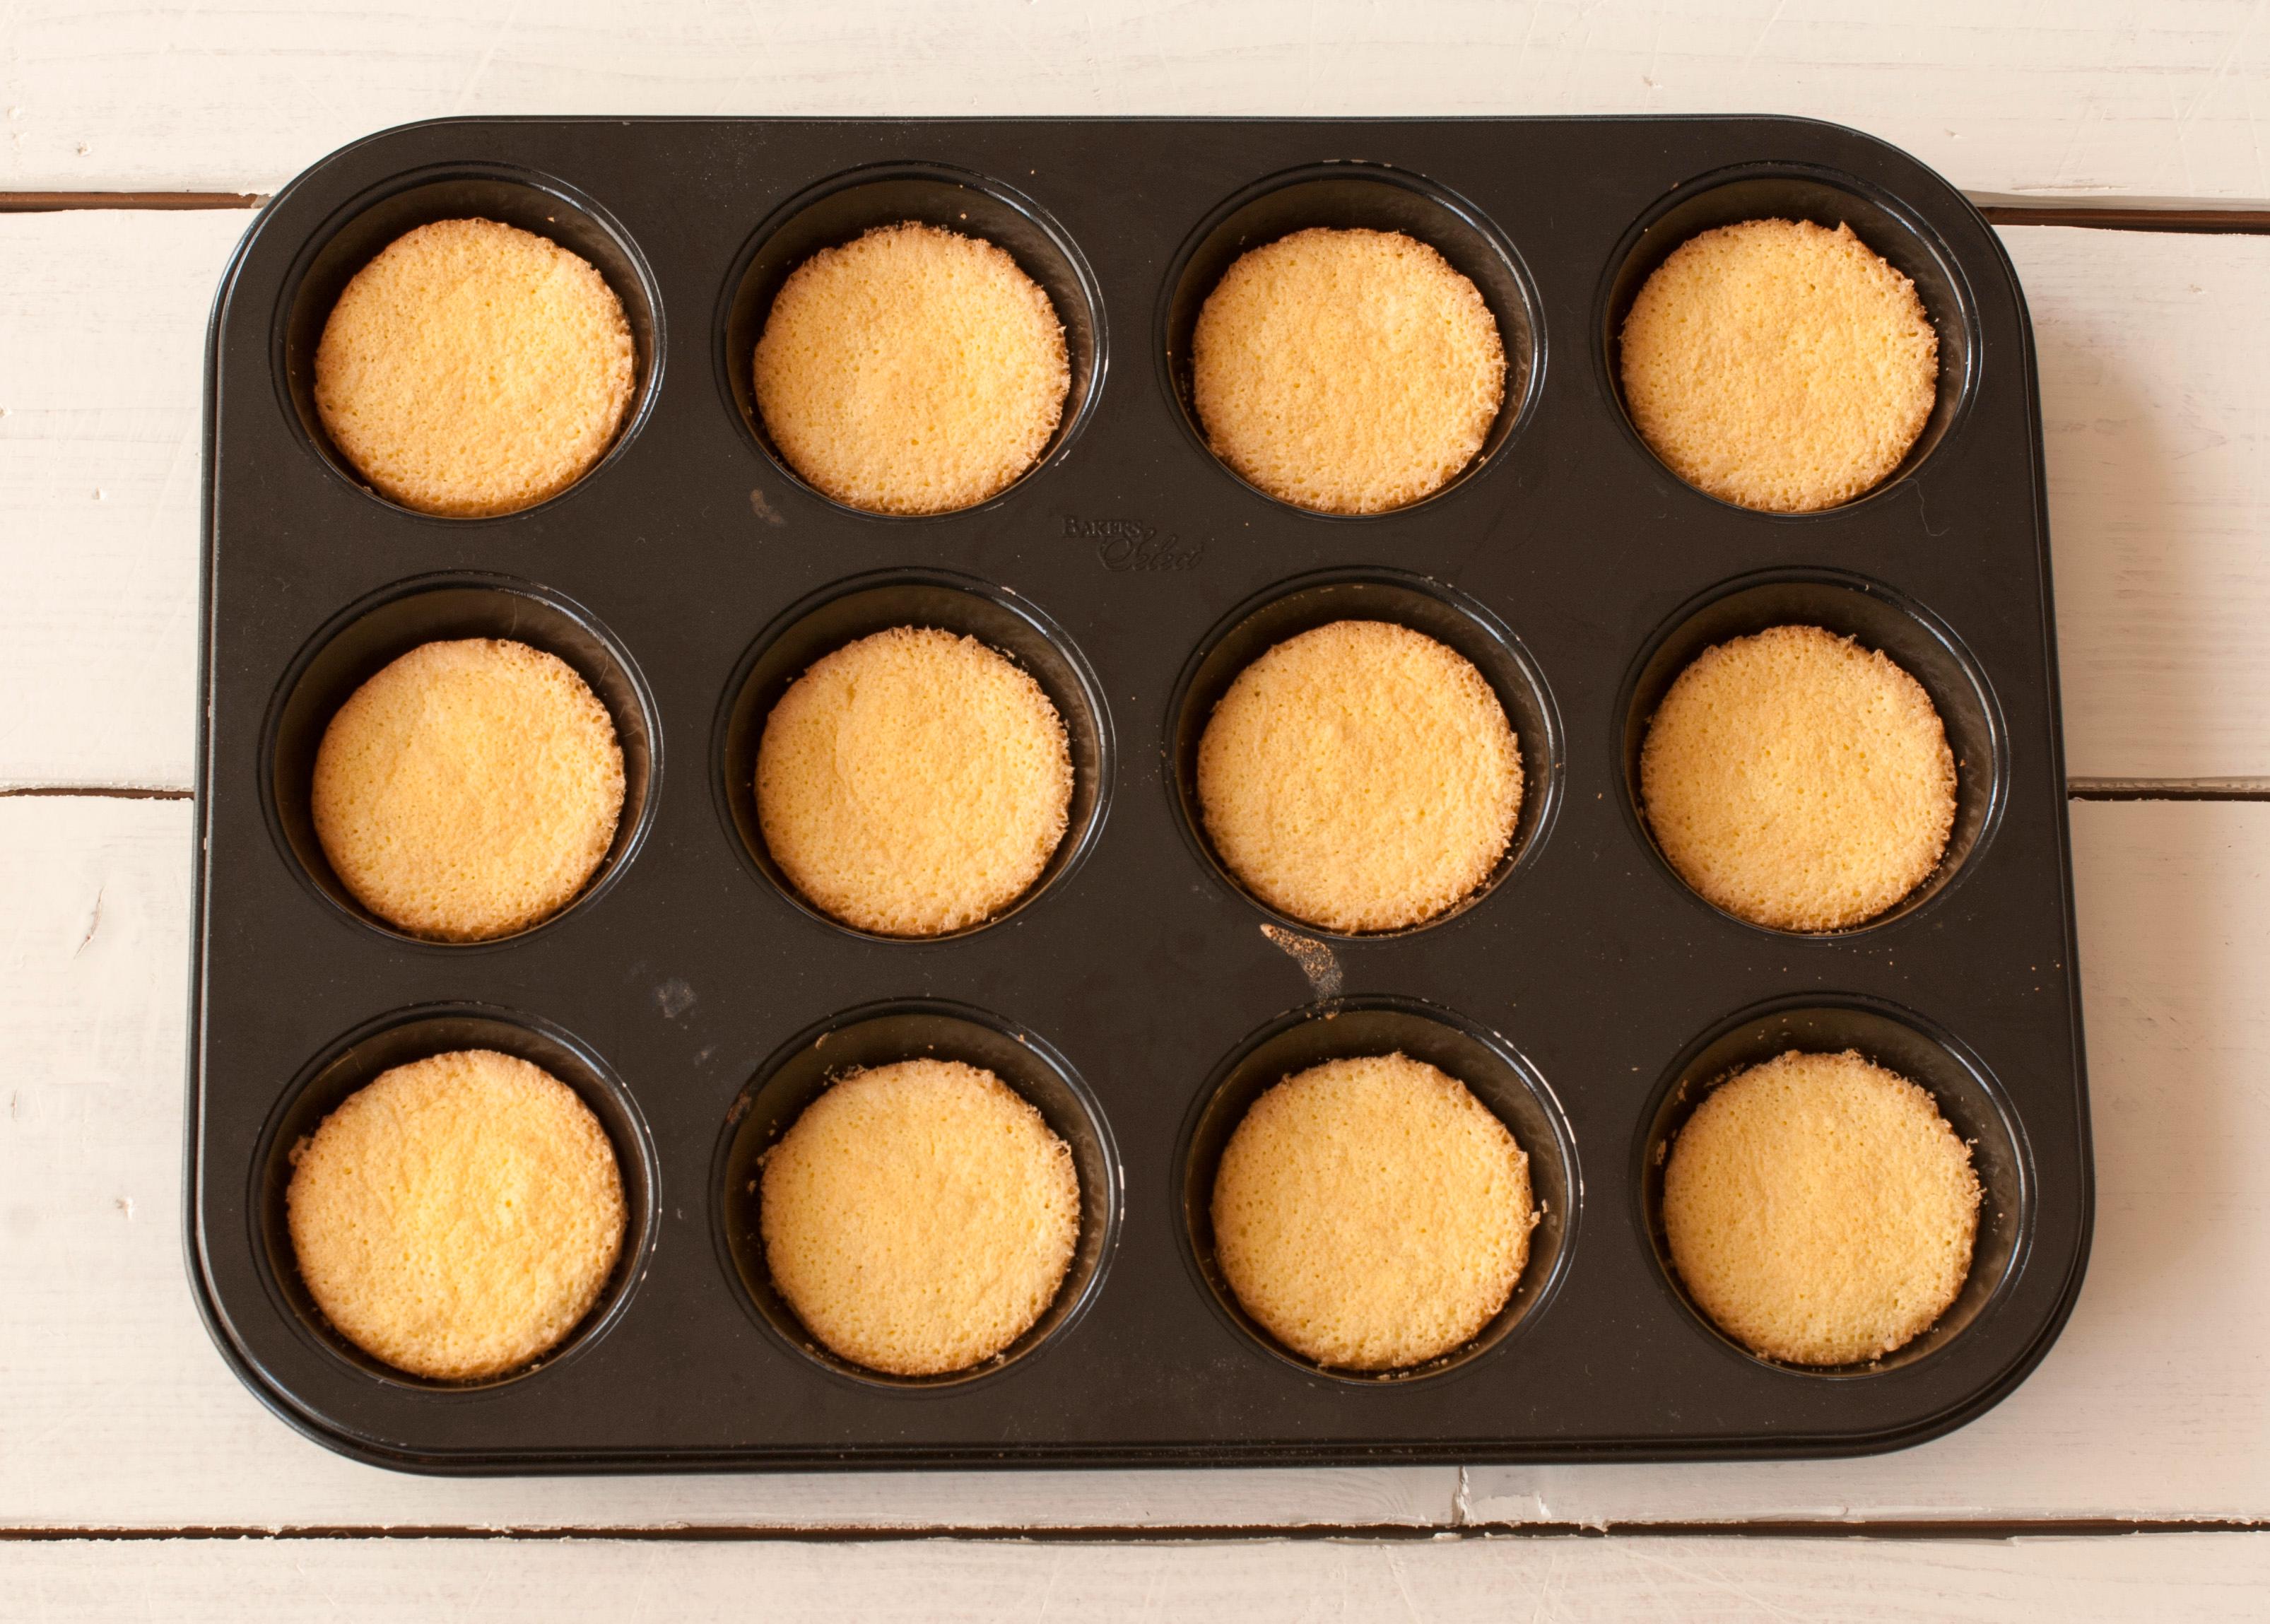 Forvarm ovnen til 200 grader. Smør en 12-hulls muffinsform godt med formfett eller smør. 